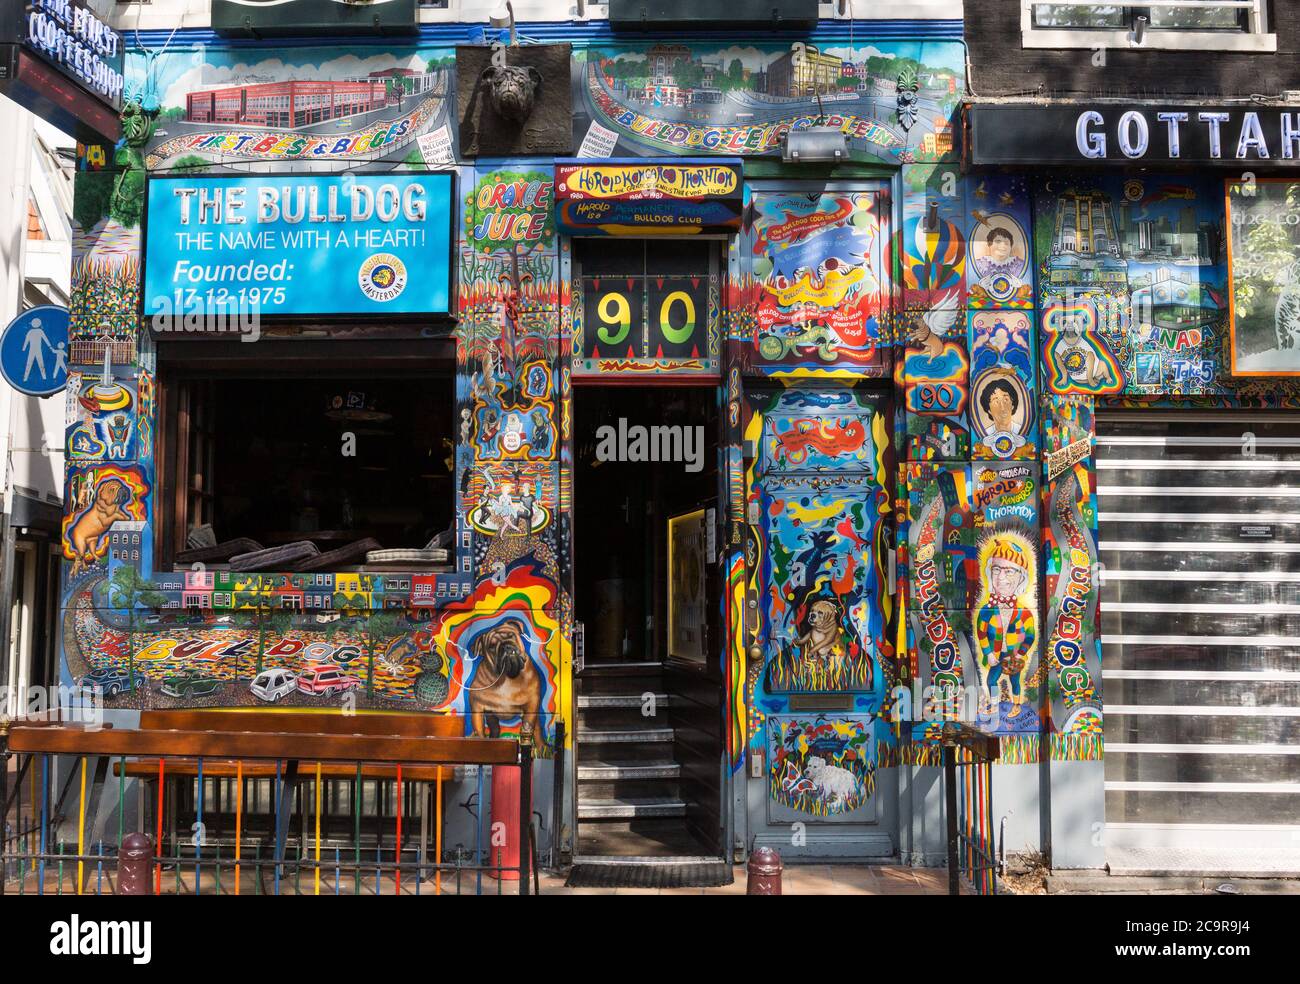 Die farbenfrohe Fassade des Bulldog Coffee Shop, der Raucherprodukte in Amsterdam, Niederlande, verkauft, wurde 1975 gegründet Stockfoto